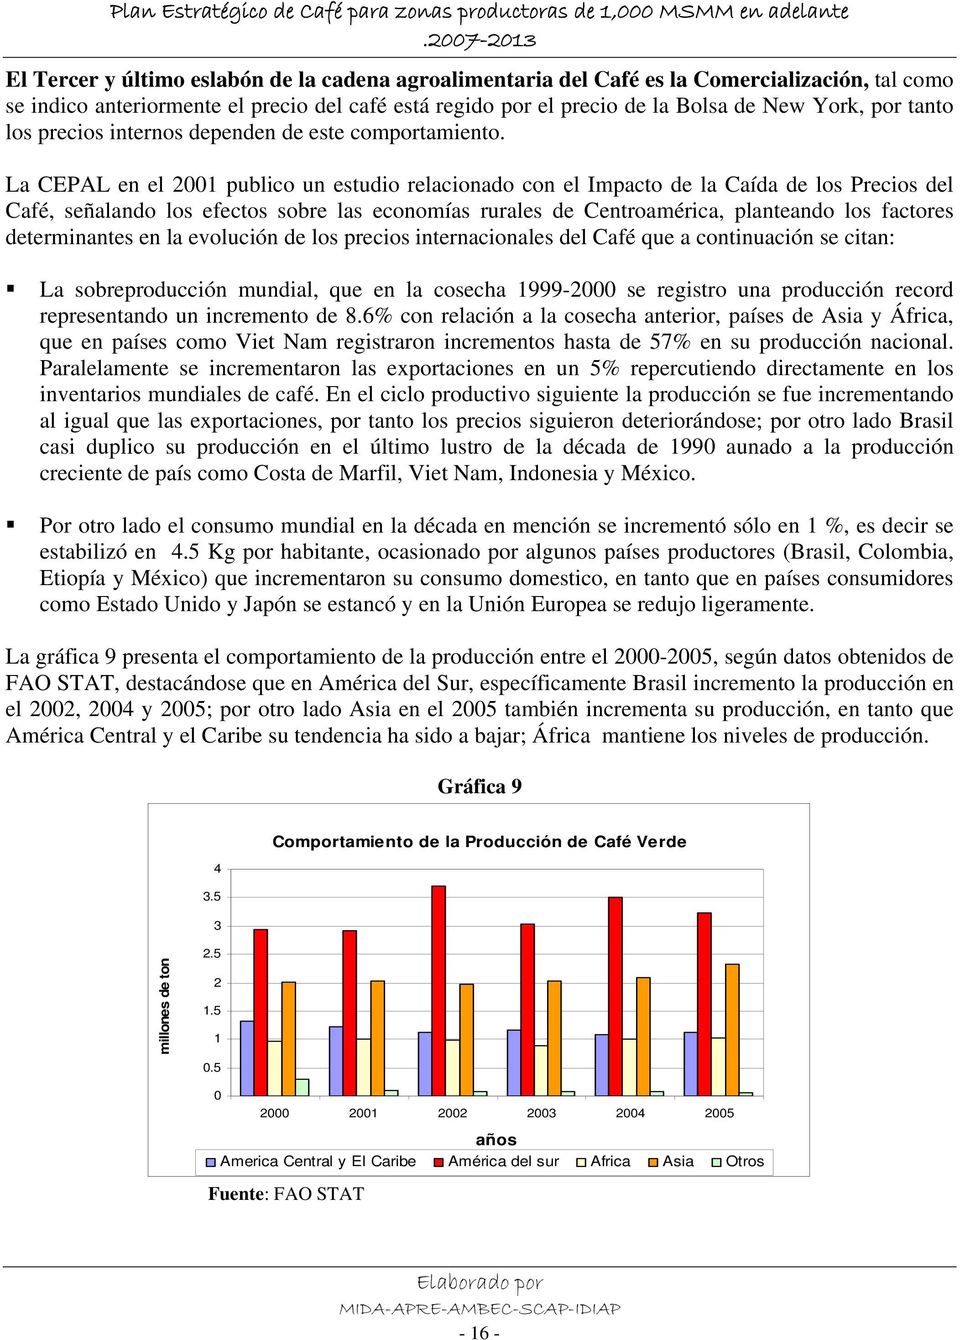 La CEPAL en el 2001 publico un estudio relacionado con el Impacto de la Caída de los Precios del Café, señalando los efectos sobre las economías rurales de Centroamérica, planteando los factores